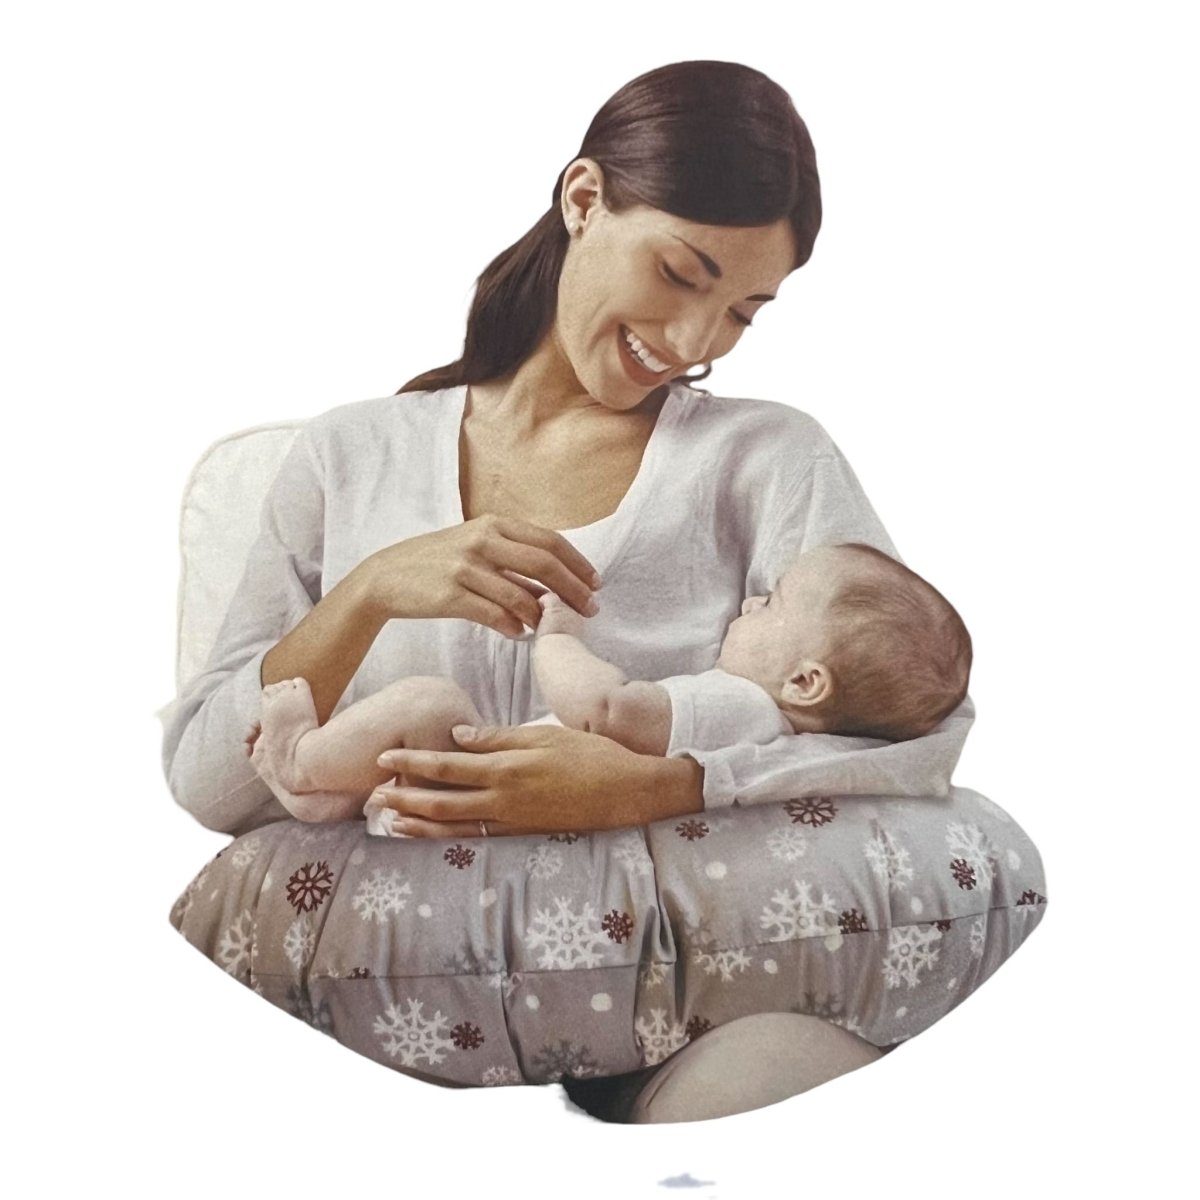 Cuscino per allattamento Nazareno Gabrielli - Mstore016 - Cuscini per allattamento - Nazzareno Gabrielli